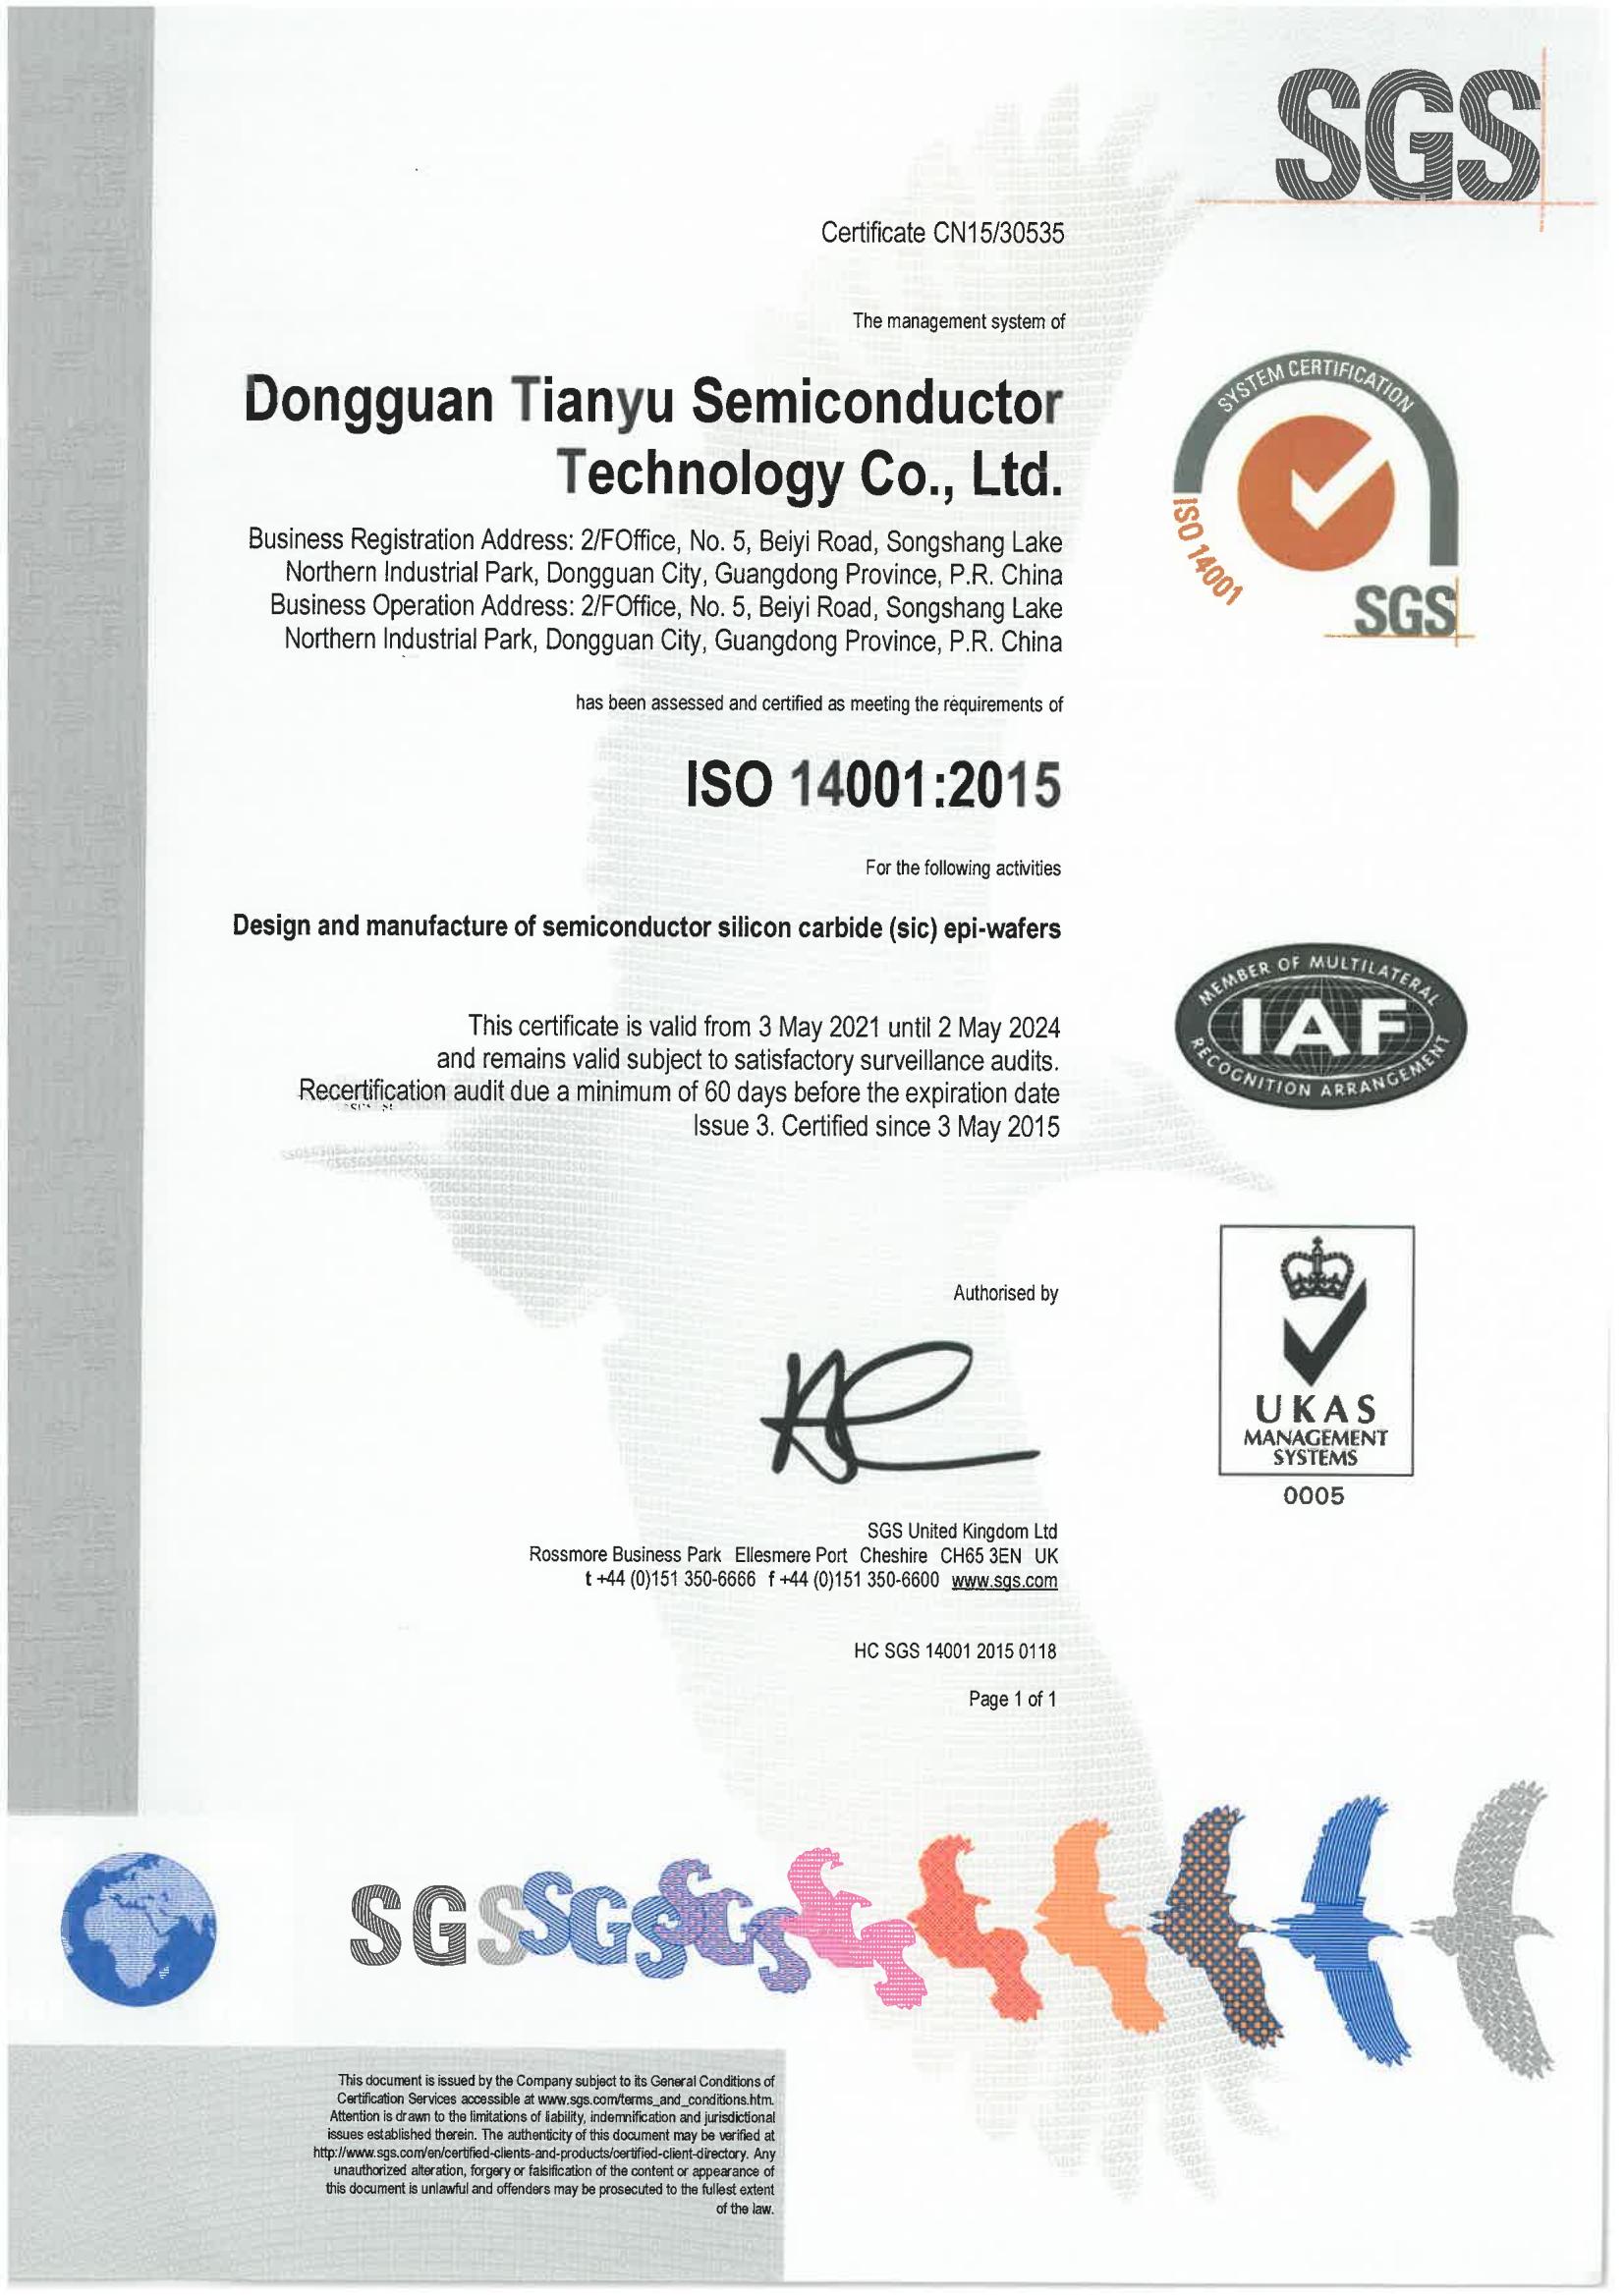 2---ISO14001：2015英文版（有效期2021-05-3至2024-05-2）.jpg